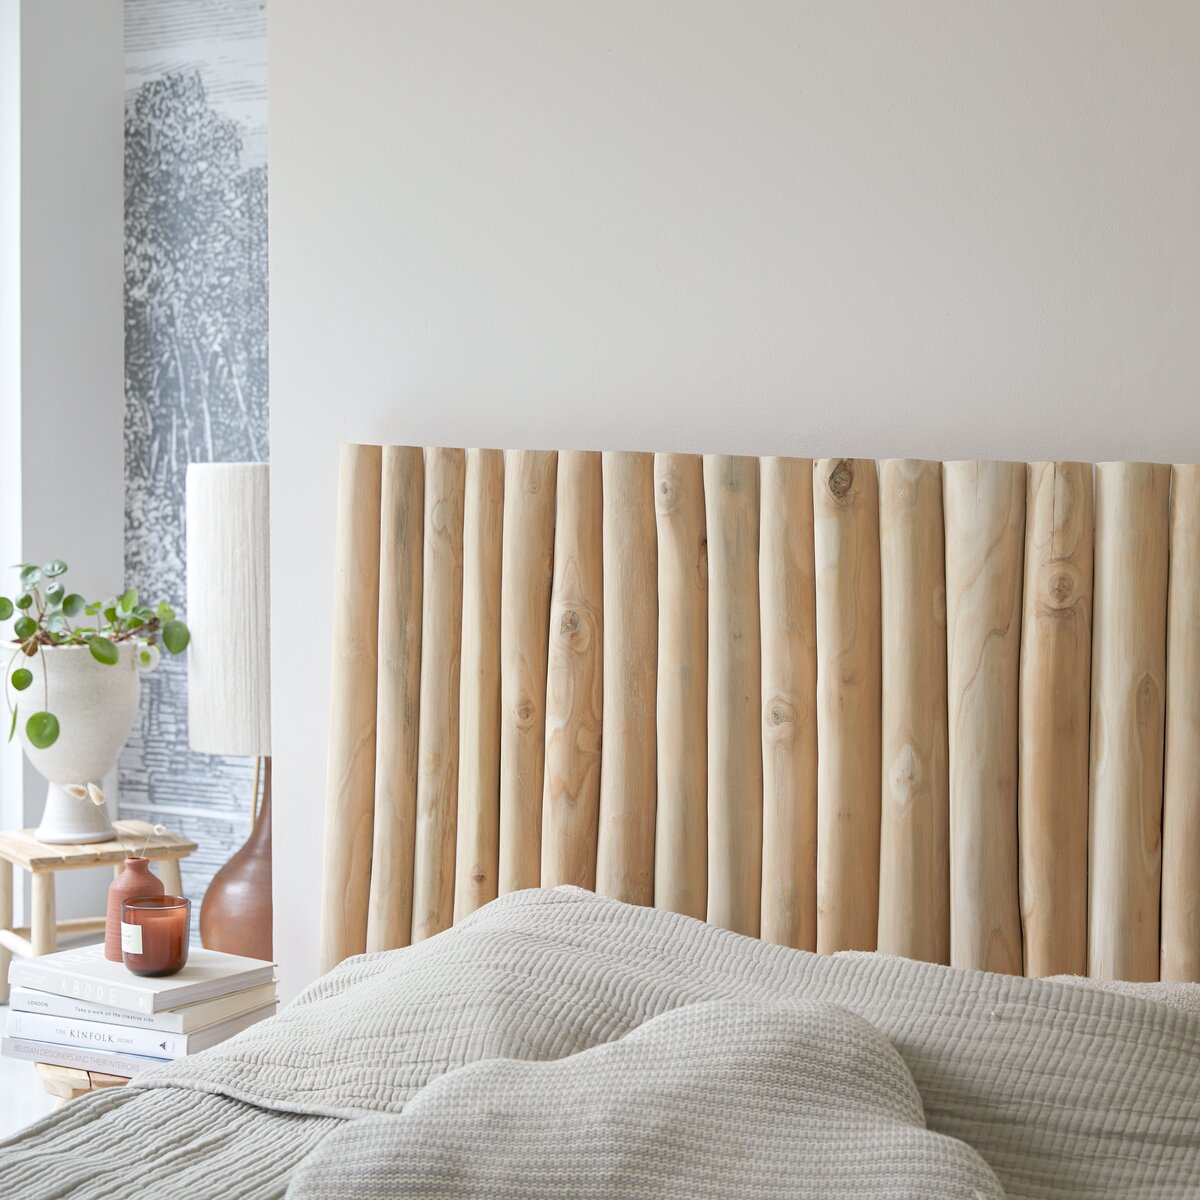 Cabecero de teca de 180 cm Urbain - Mueble para el dormitorio